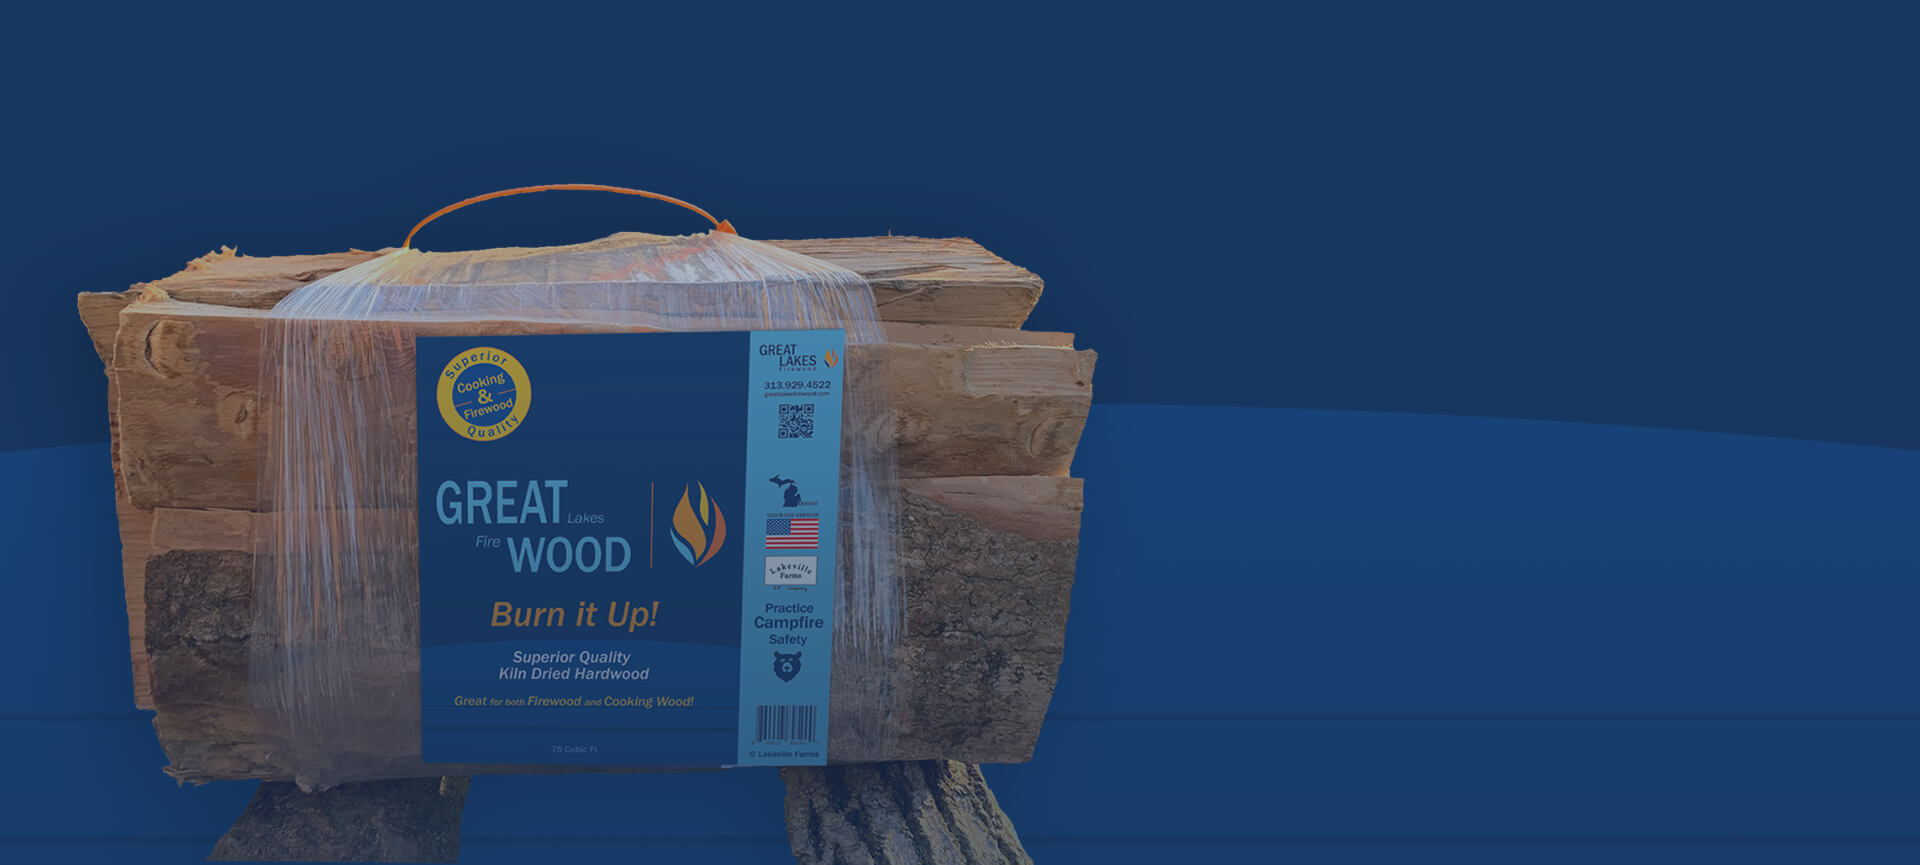 Cooking Wood & Firewood Bundles